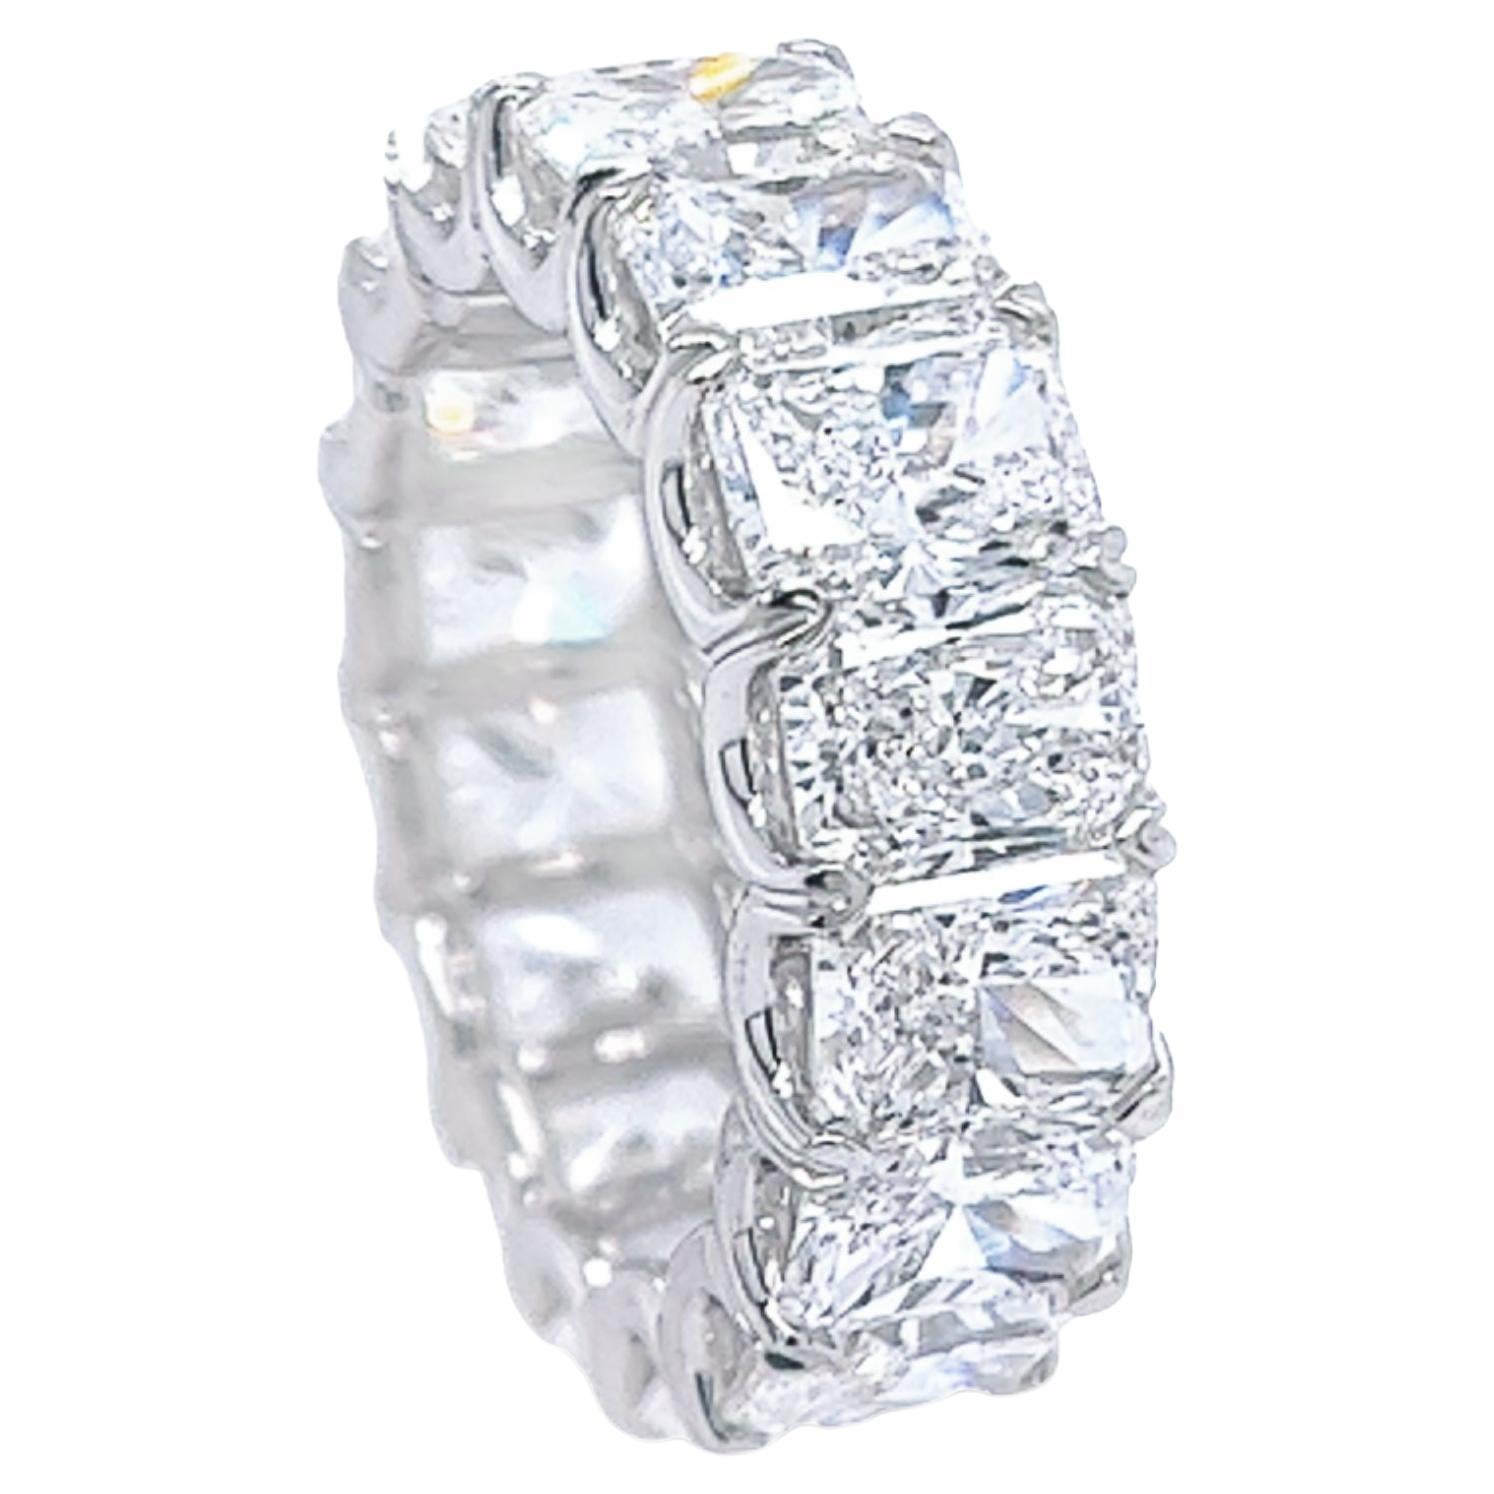 David Rosenberg Alliance d'éternité en diamants taille radiant de 11,31 carats au total, certifiés GIA